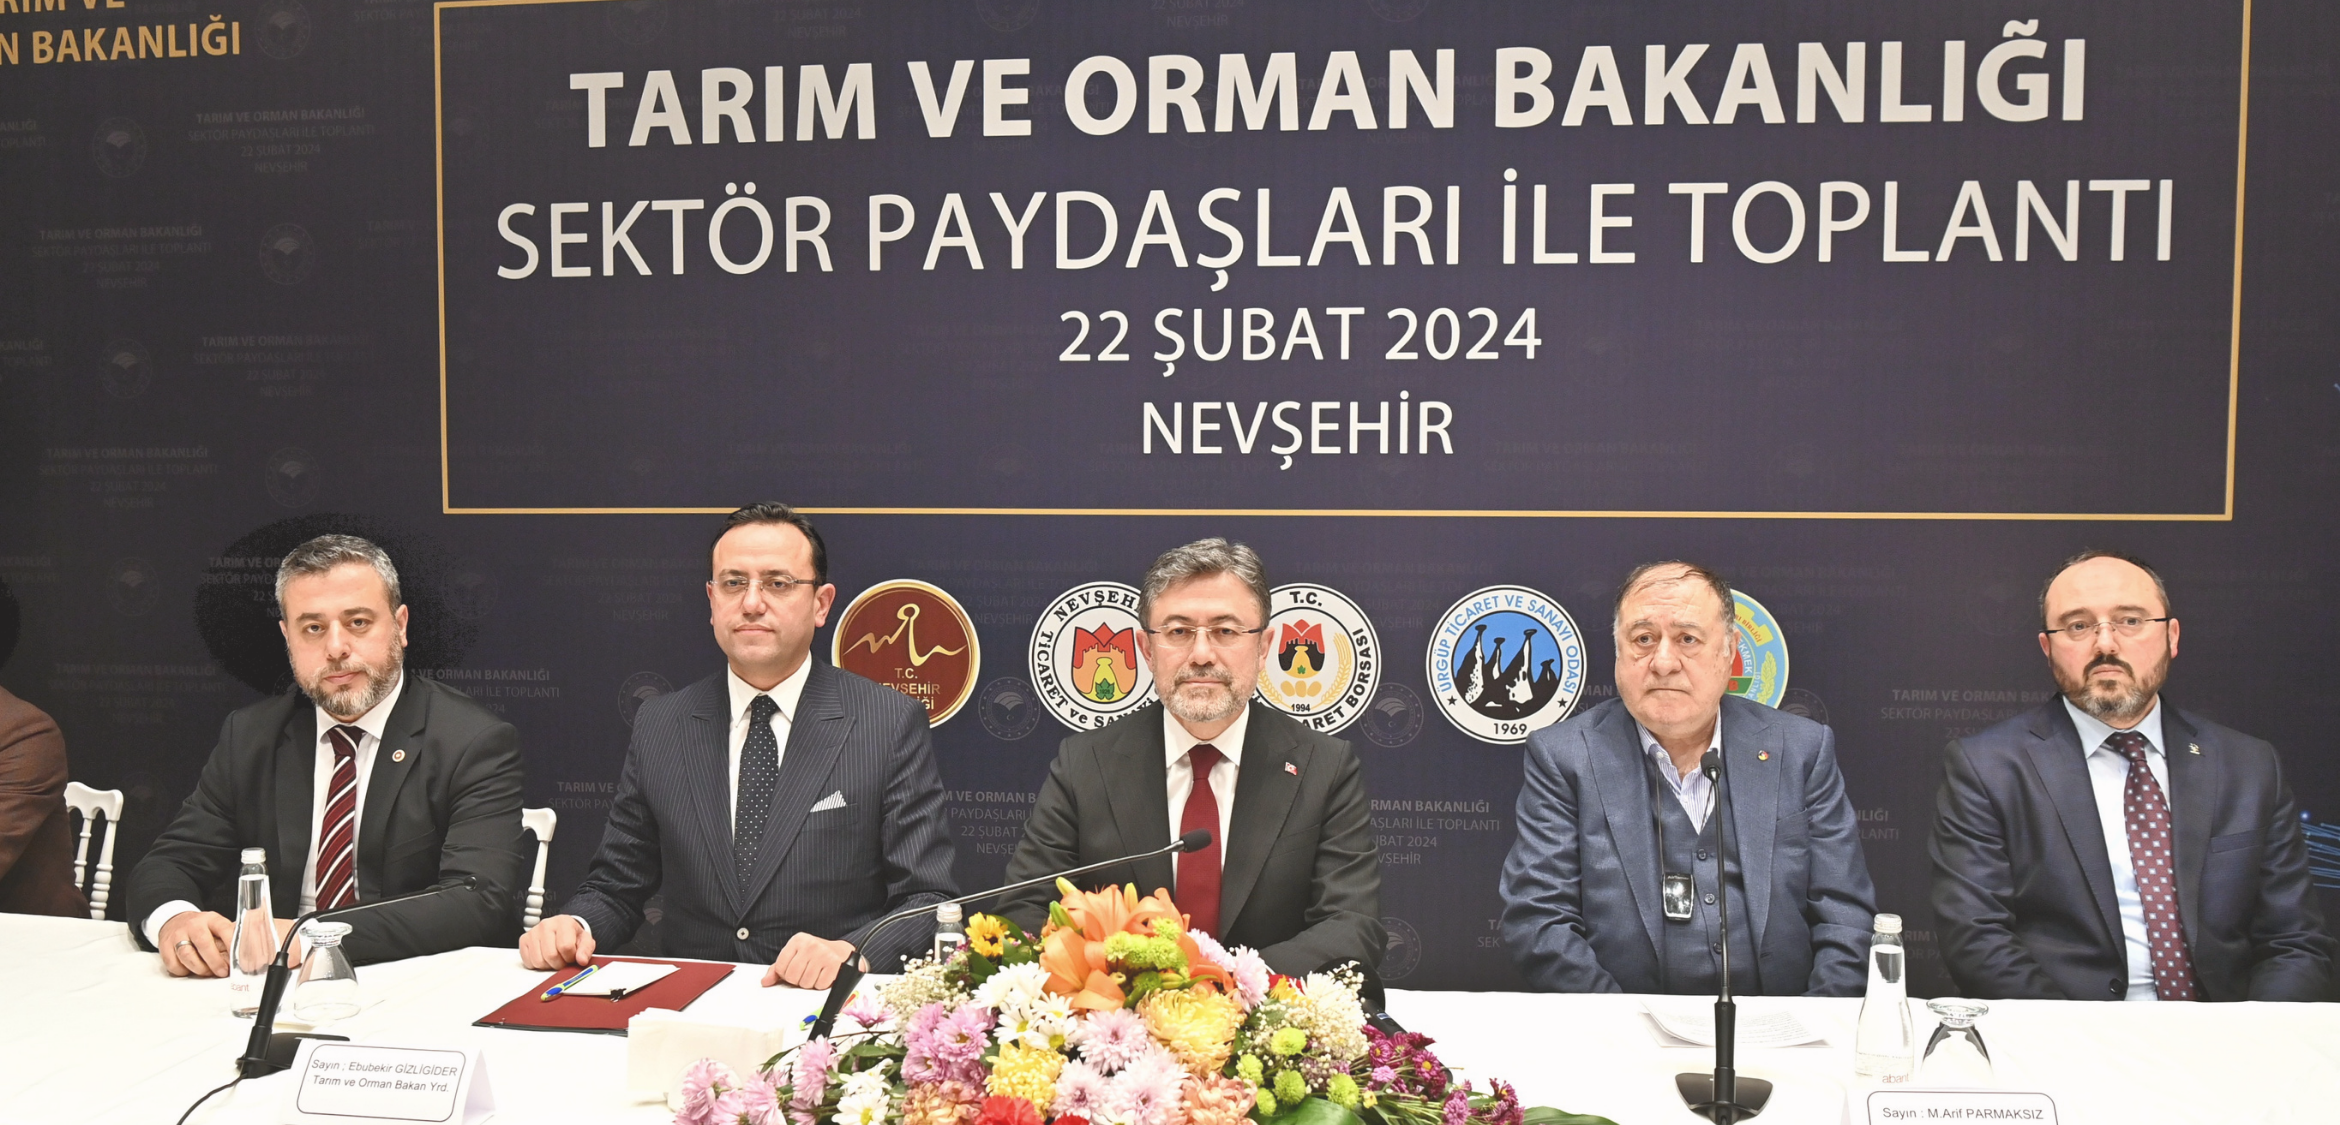 Tarım ve Orman Bakanı Nevşehir'de çeşitli programlara katıldı